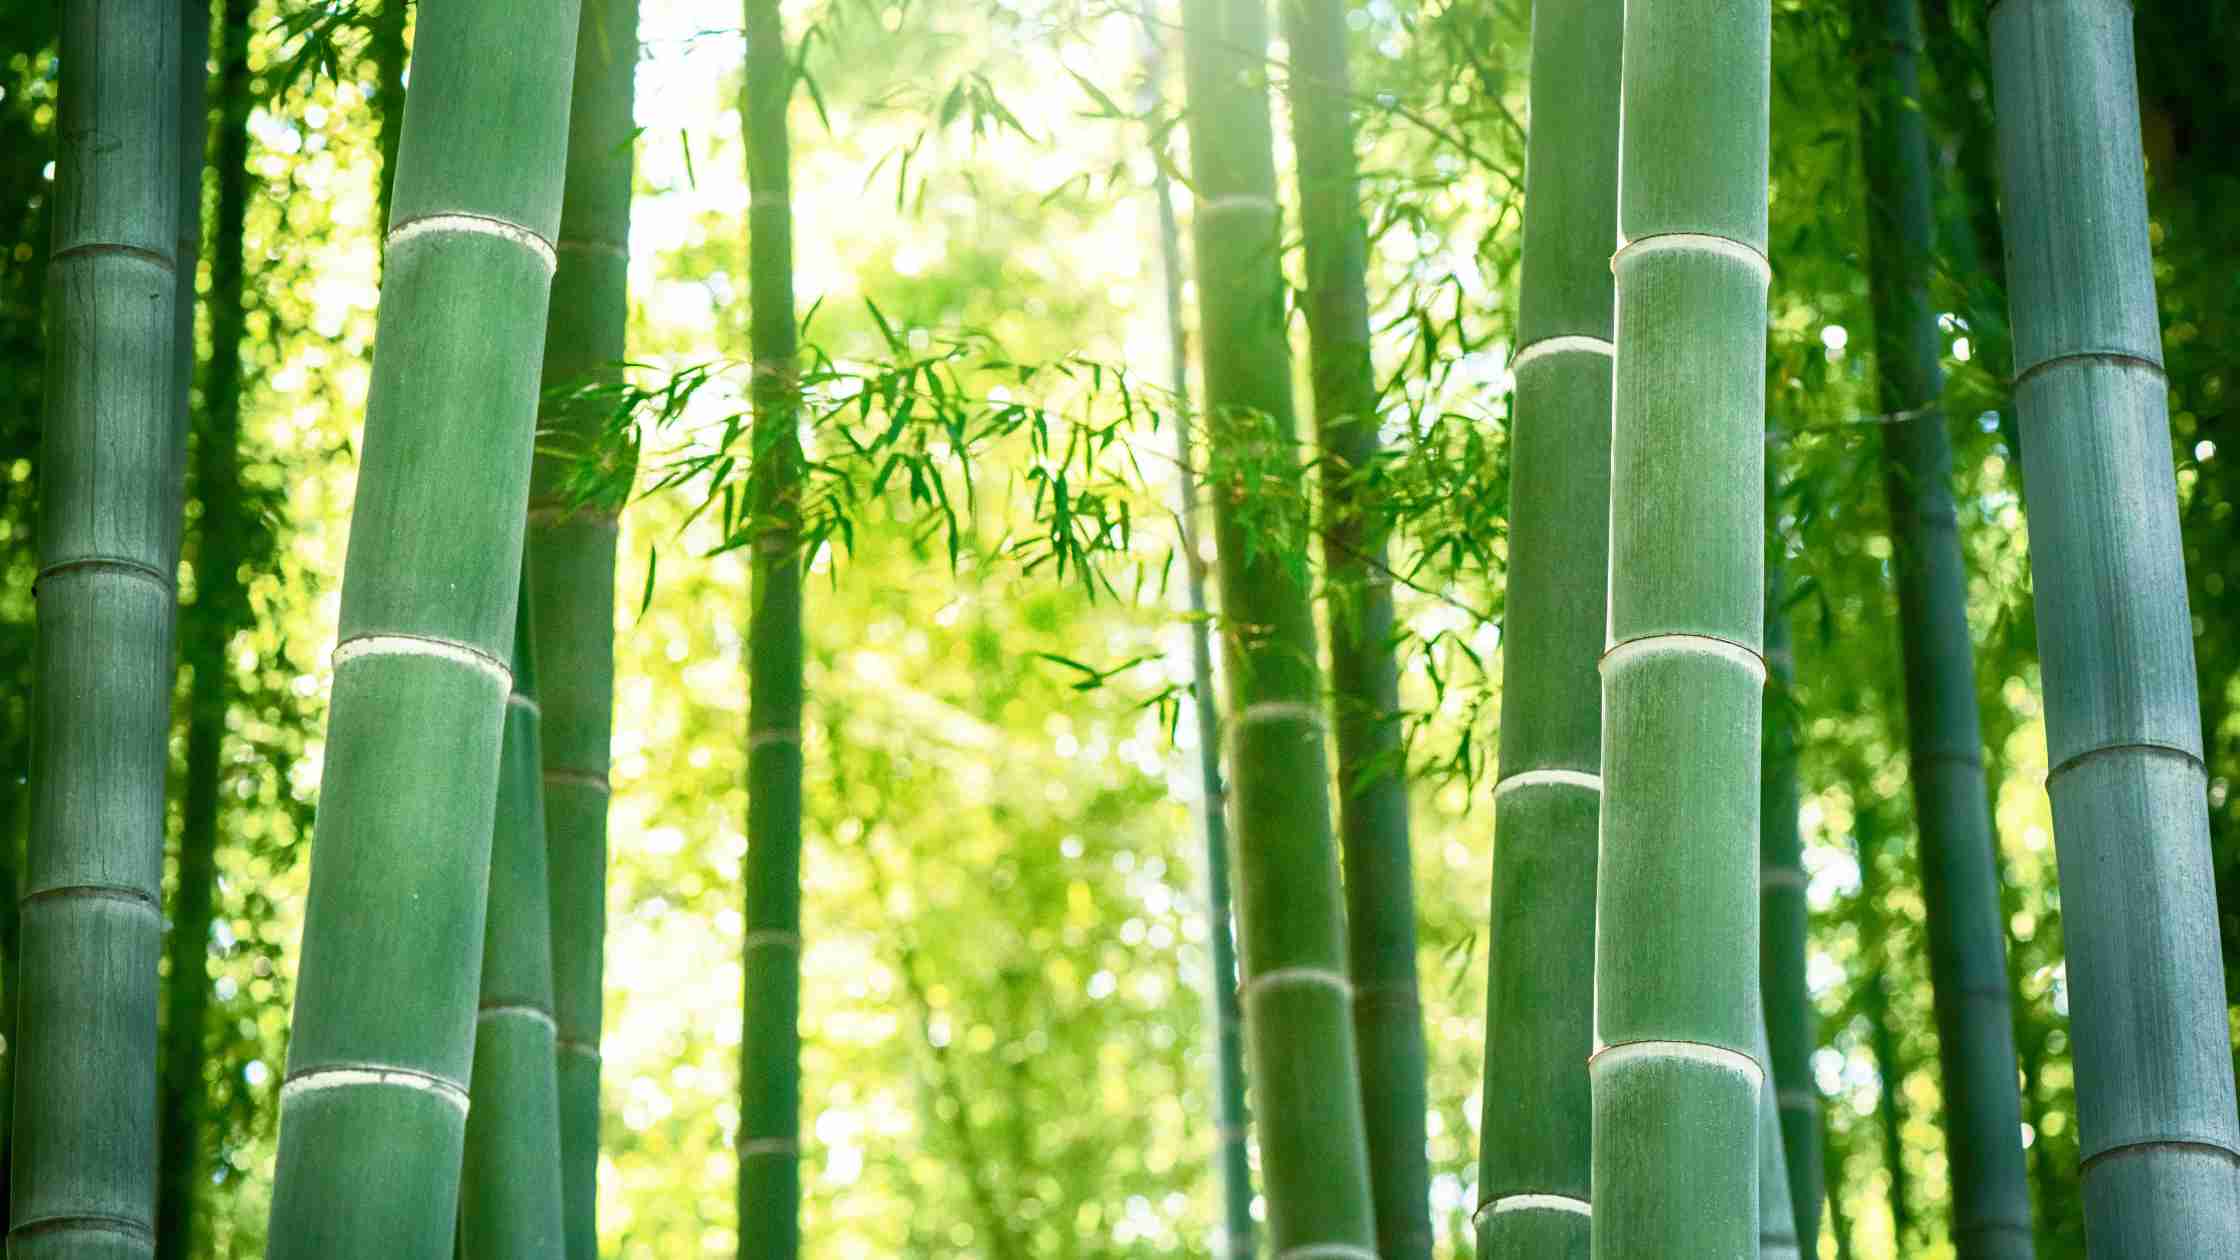 Ein Bild des dichten Bambuswaldes, in dem die grünen Farben der Pflanzen strahlen. Bambus ist eine der Pflanzenarten, die besonders reich an Chlorophyll sind und damit wichtige Nährstoffe und gesundheitliche Vorteile bietet.